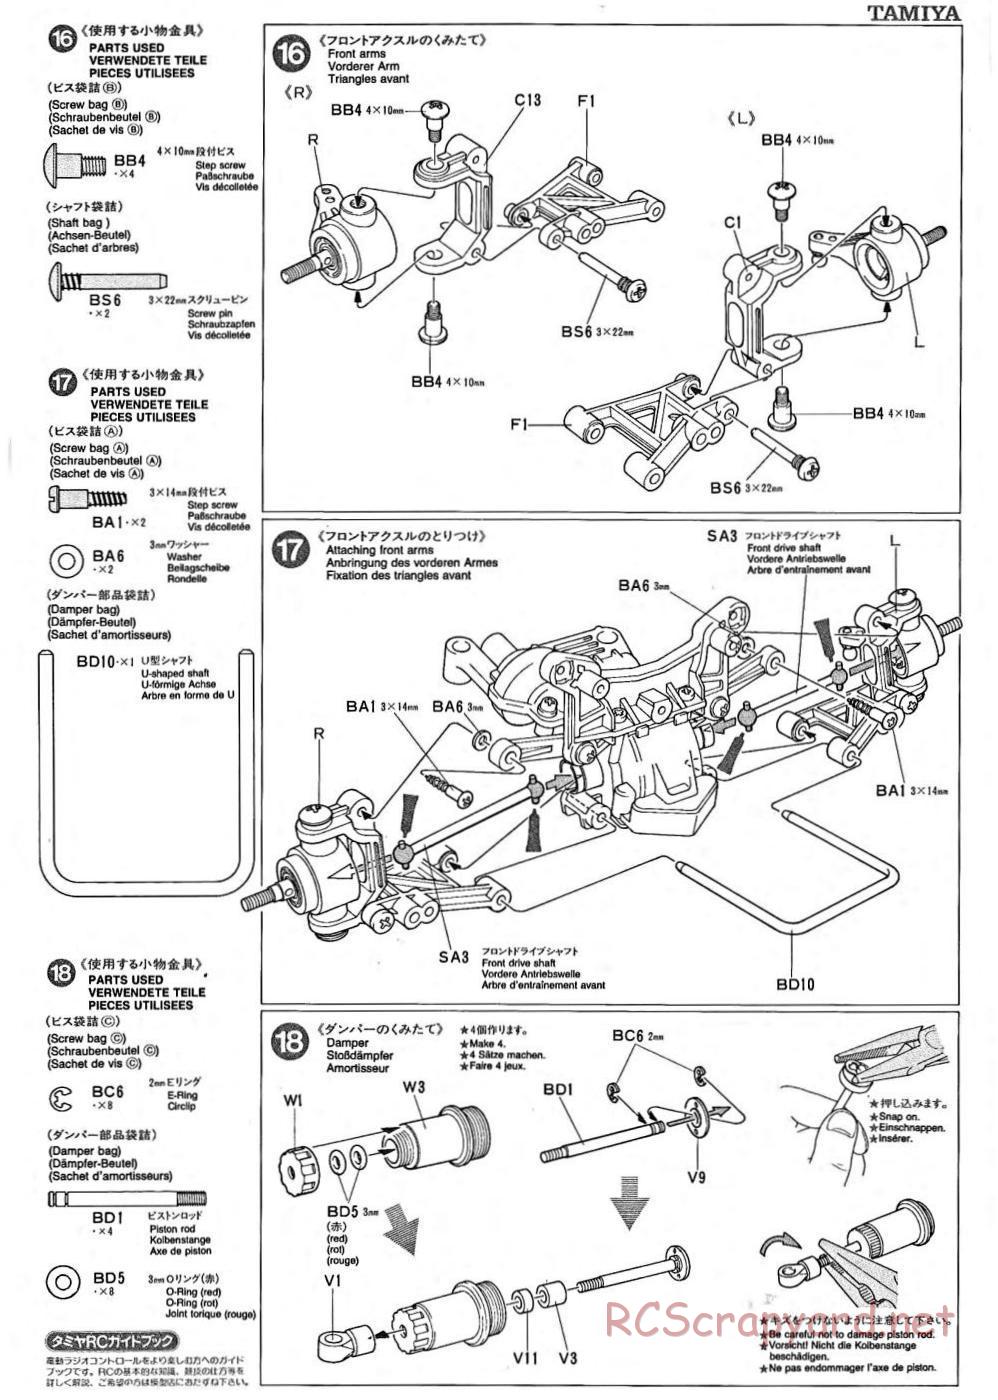 Tamiya - TA-02 Chassis - Manual - Page 6